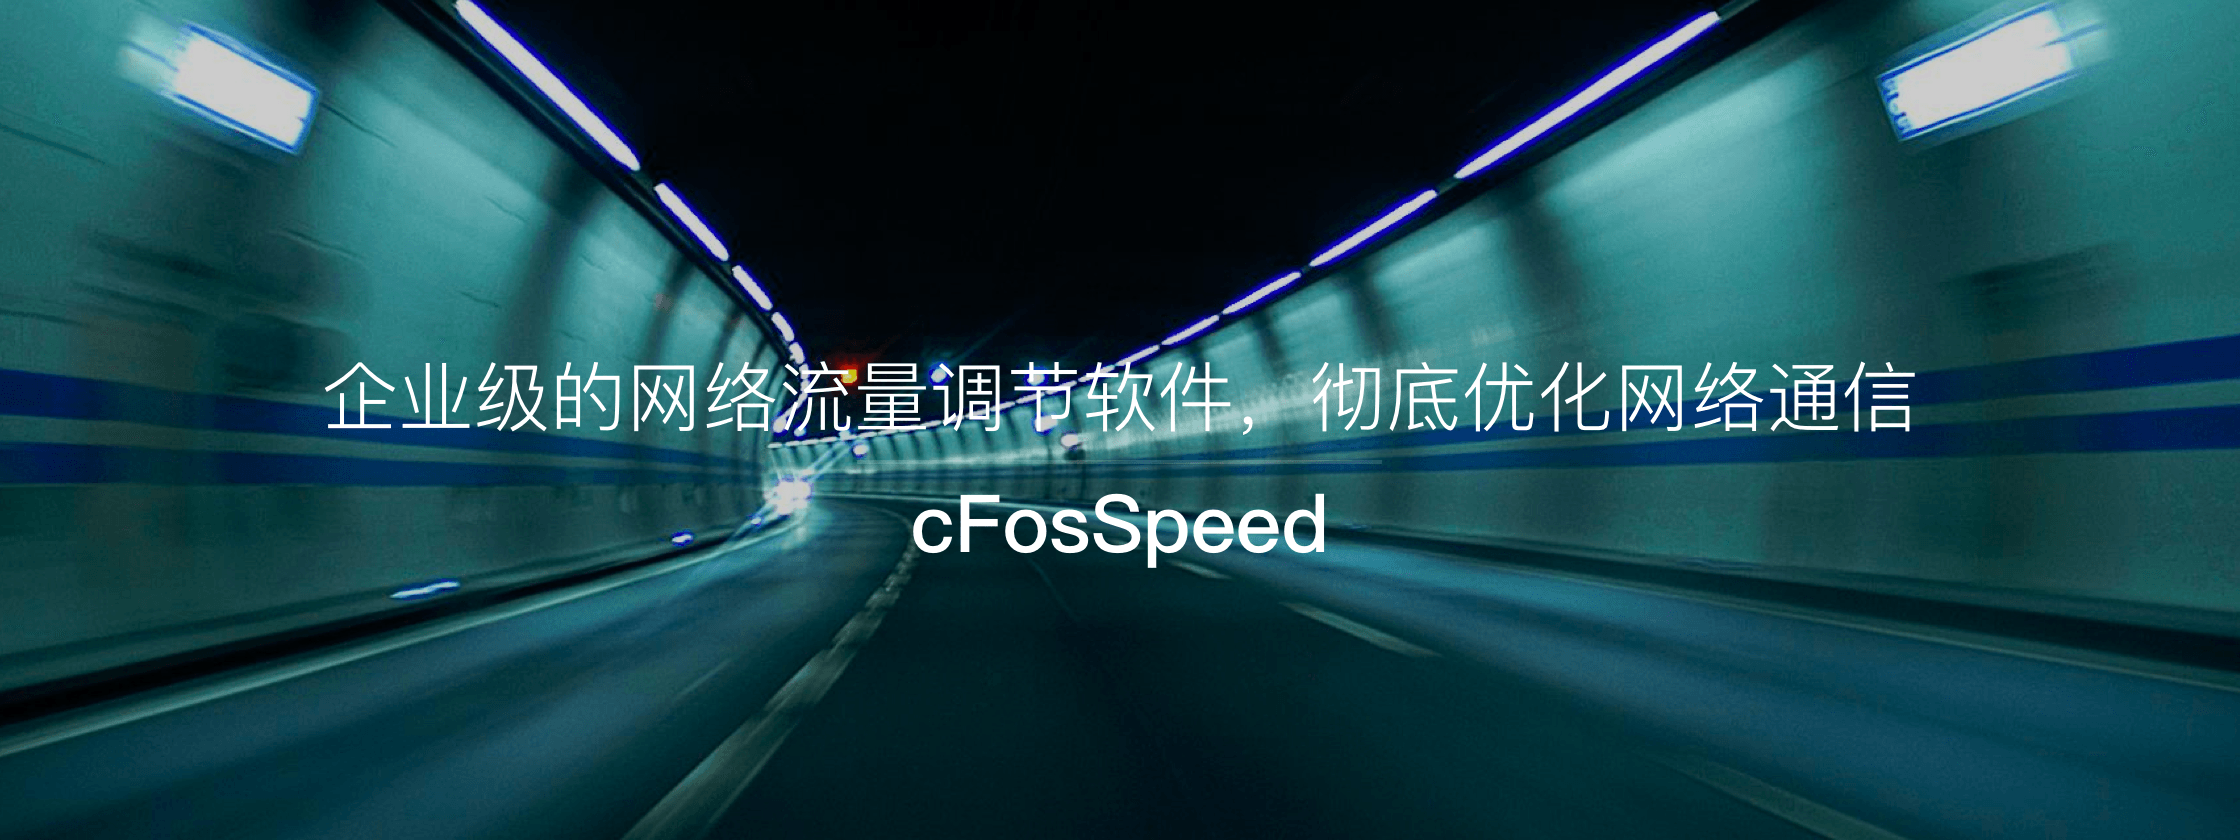 cFosSpeed – 企业级的网络流量调节软件，彻底优化网络通信